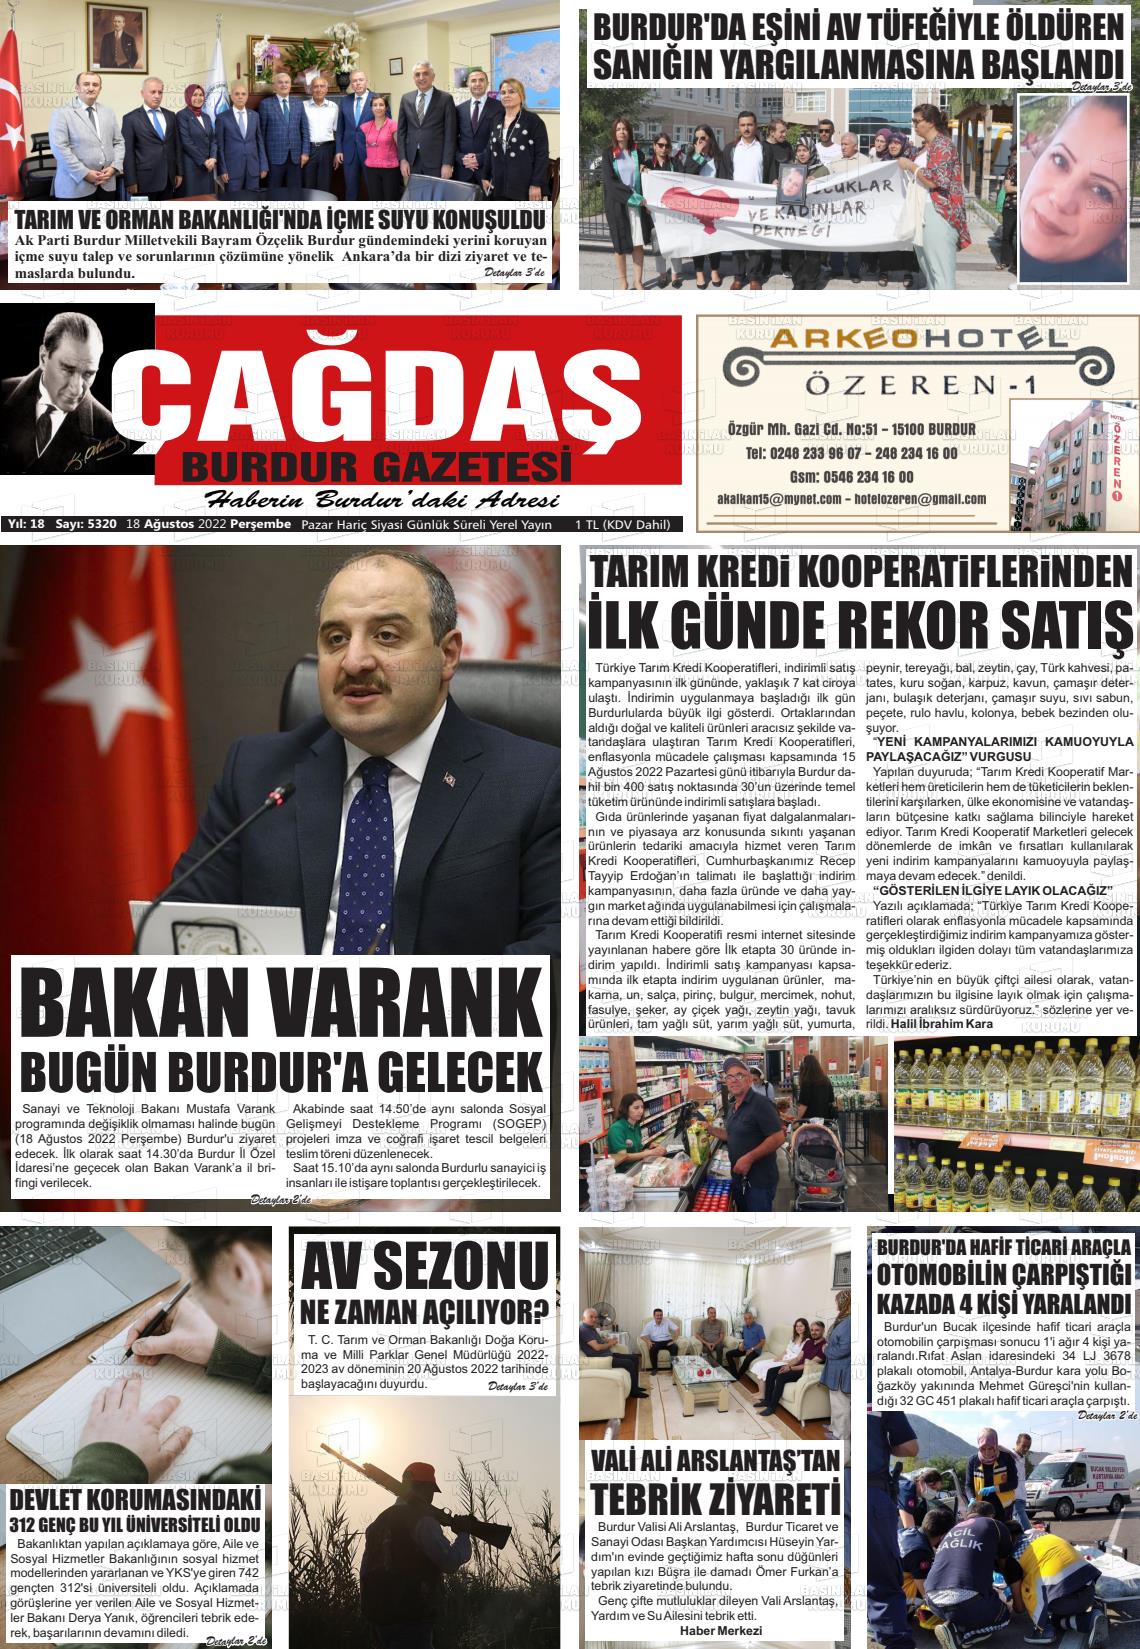 18 Ağustos 2022 Çağdaş Burdur Gazete Manşeti